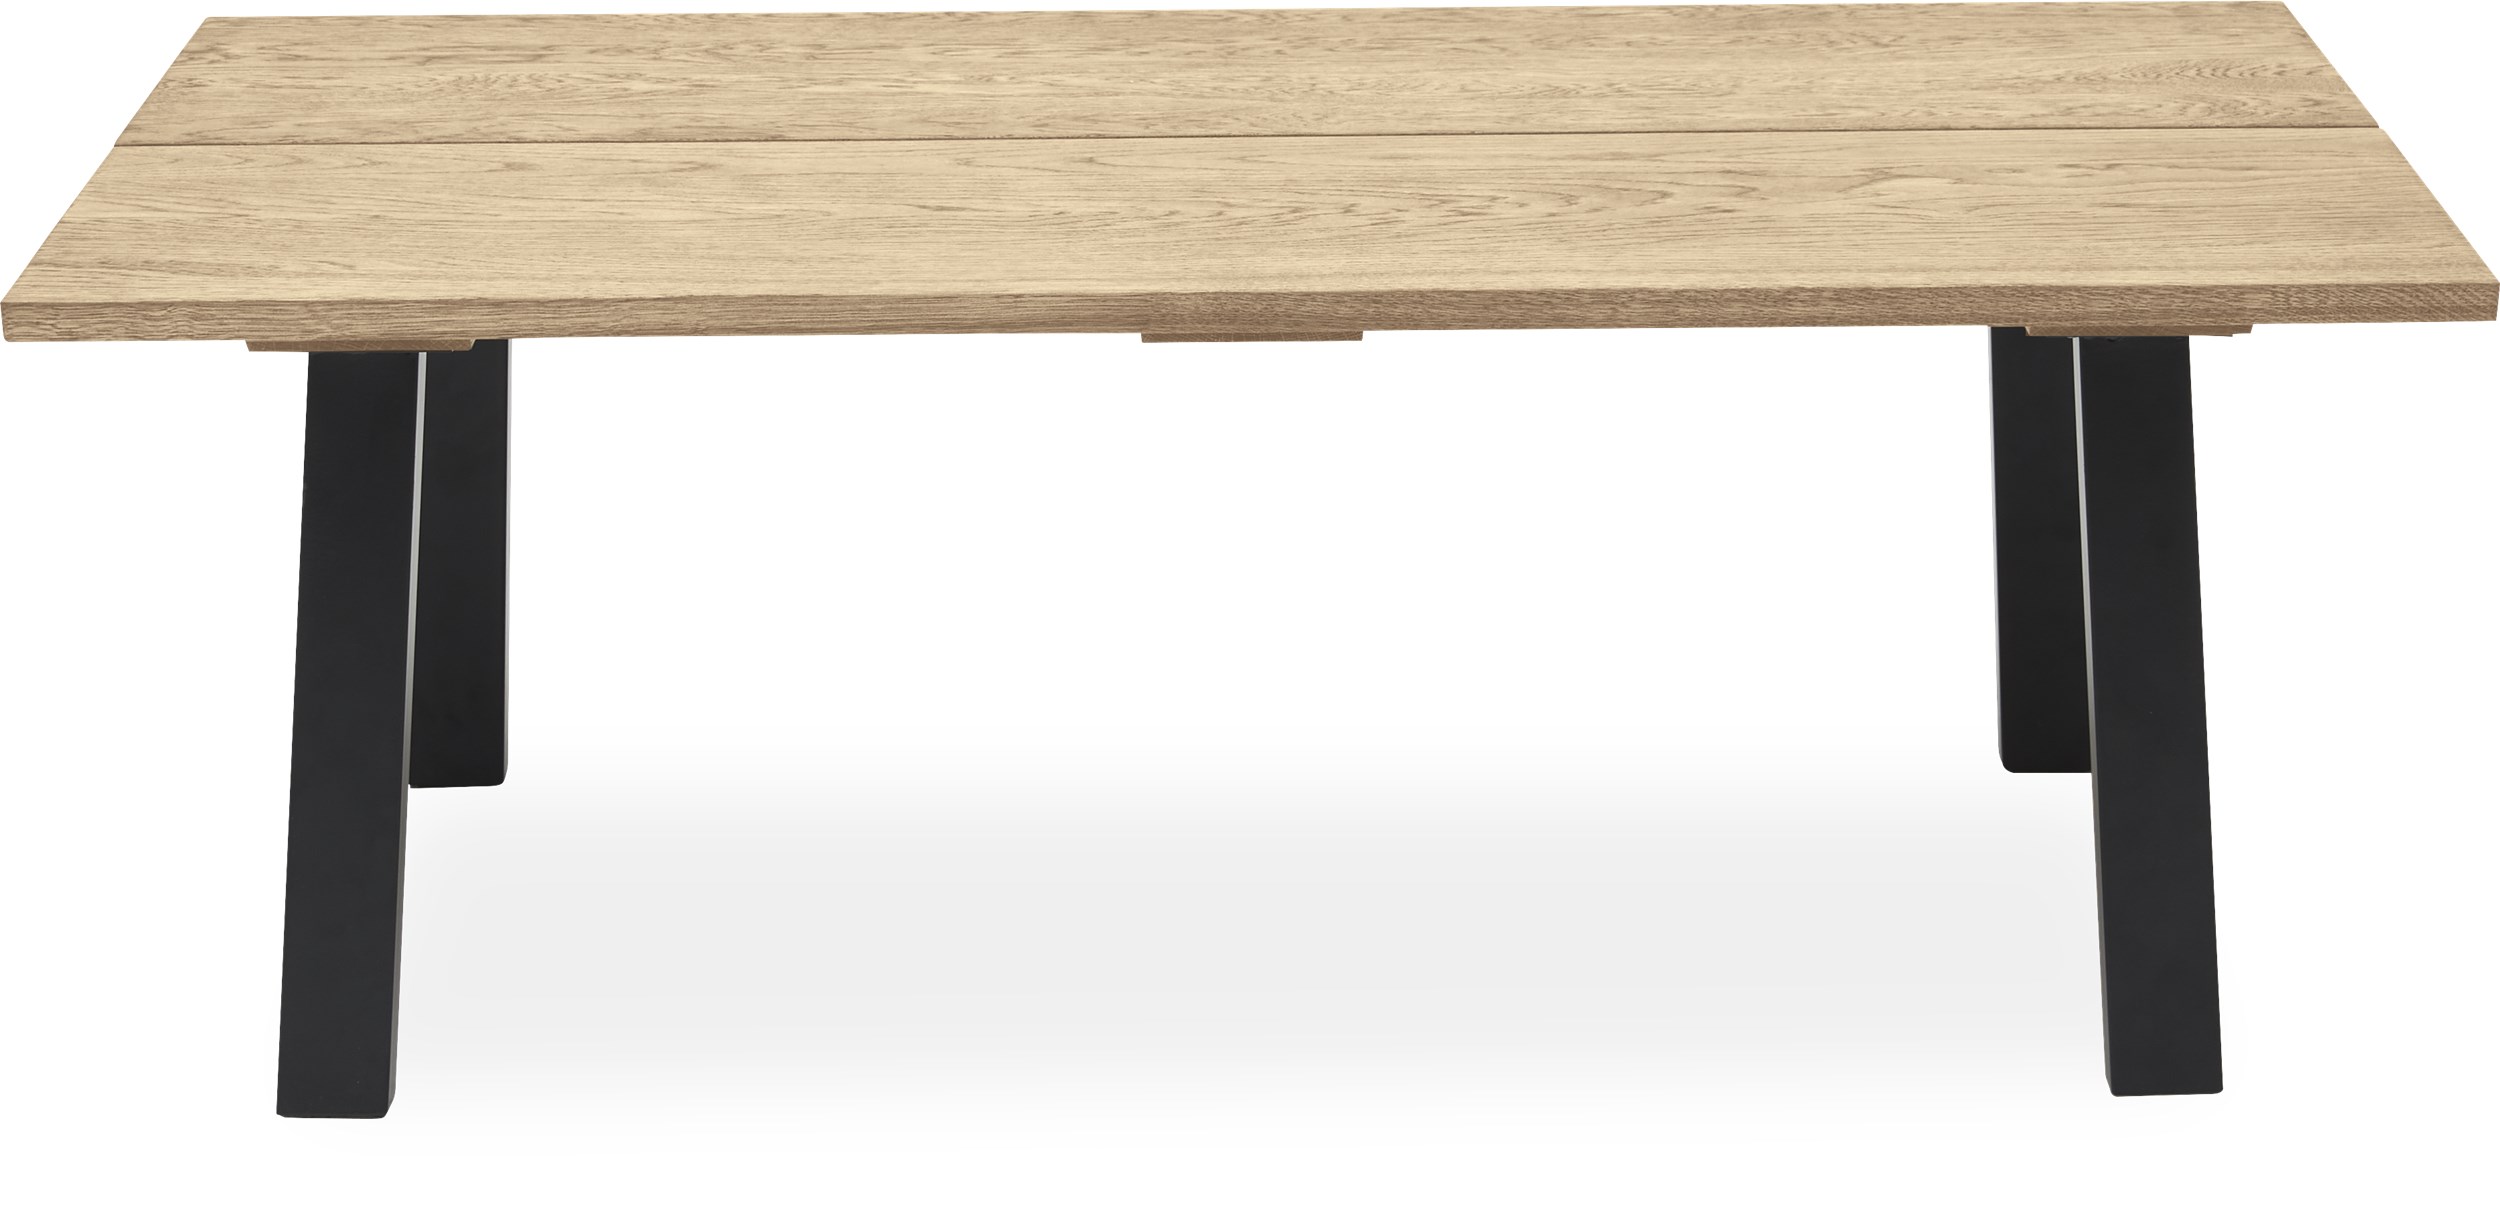 Real Soffbord 130 x 45 x 70 cm - Massiv vitoljad ek, 2 brädor med snedställd kant och ben i svart, pulverlackerad metall